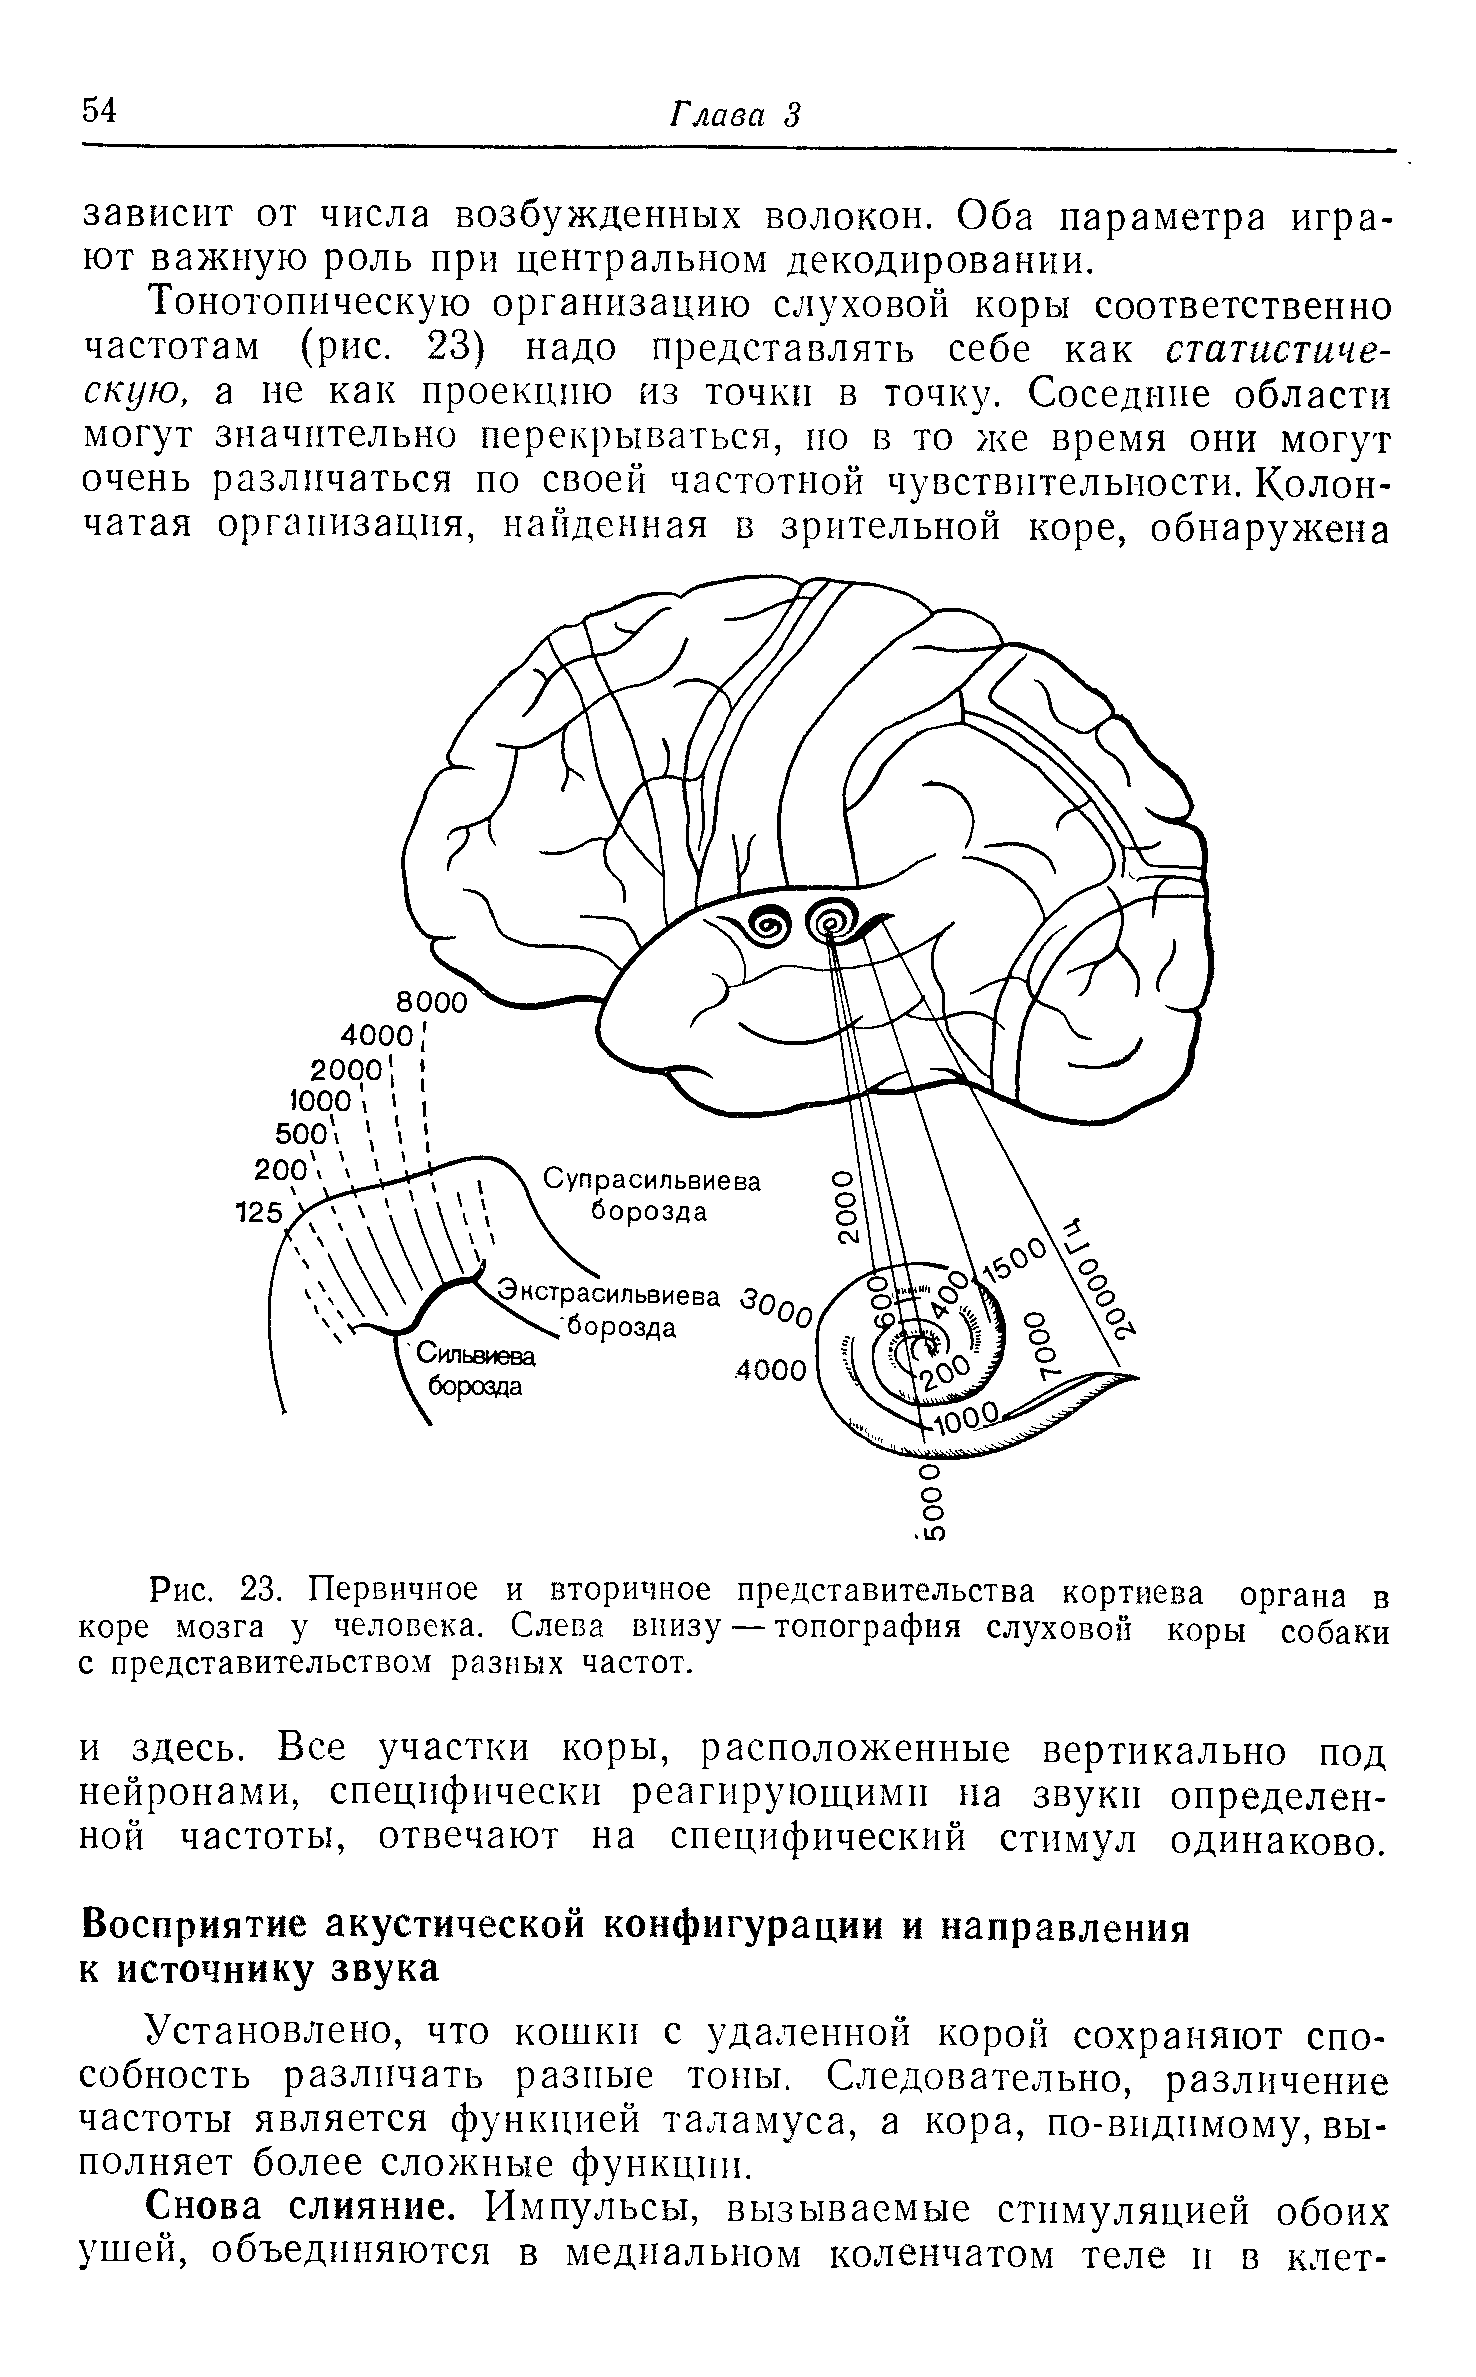 Рис. 23. Первичное и вторичное представительства кортиева органа в коре мозга у человека. Слева внизу — топография слуховой коры собаки с представительством разных частот.